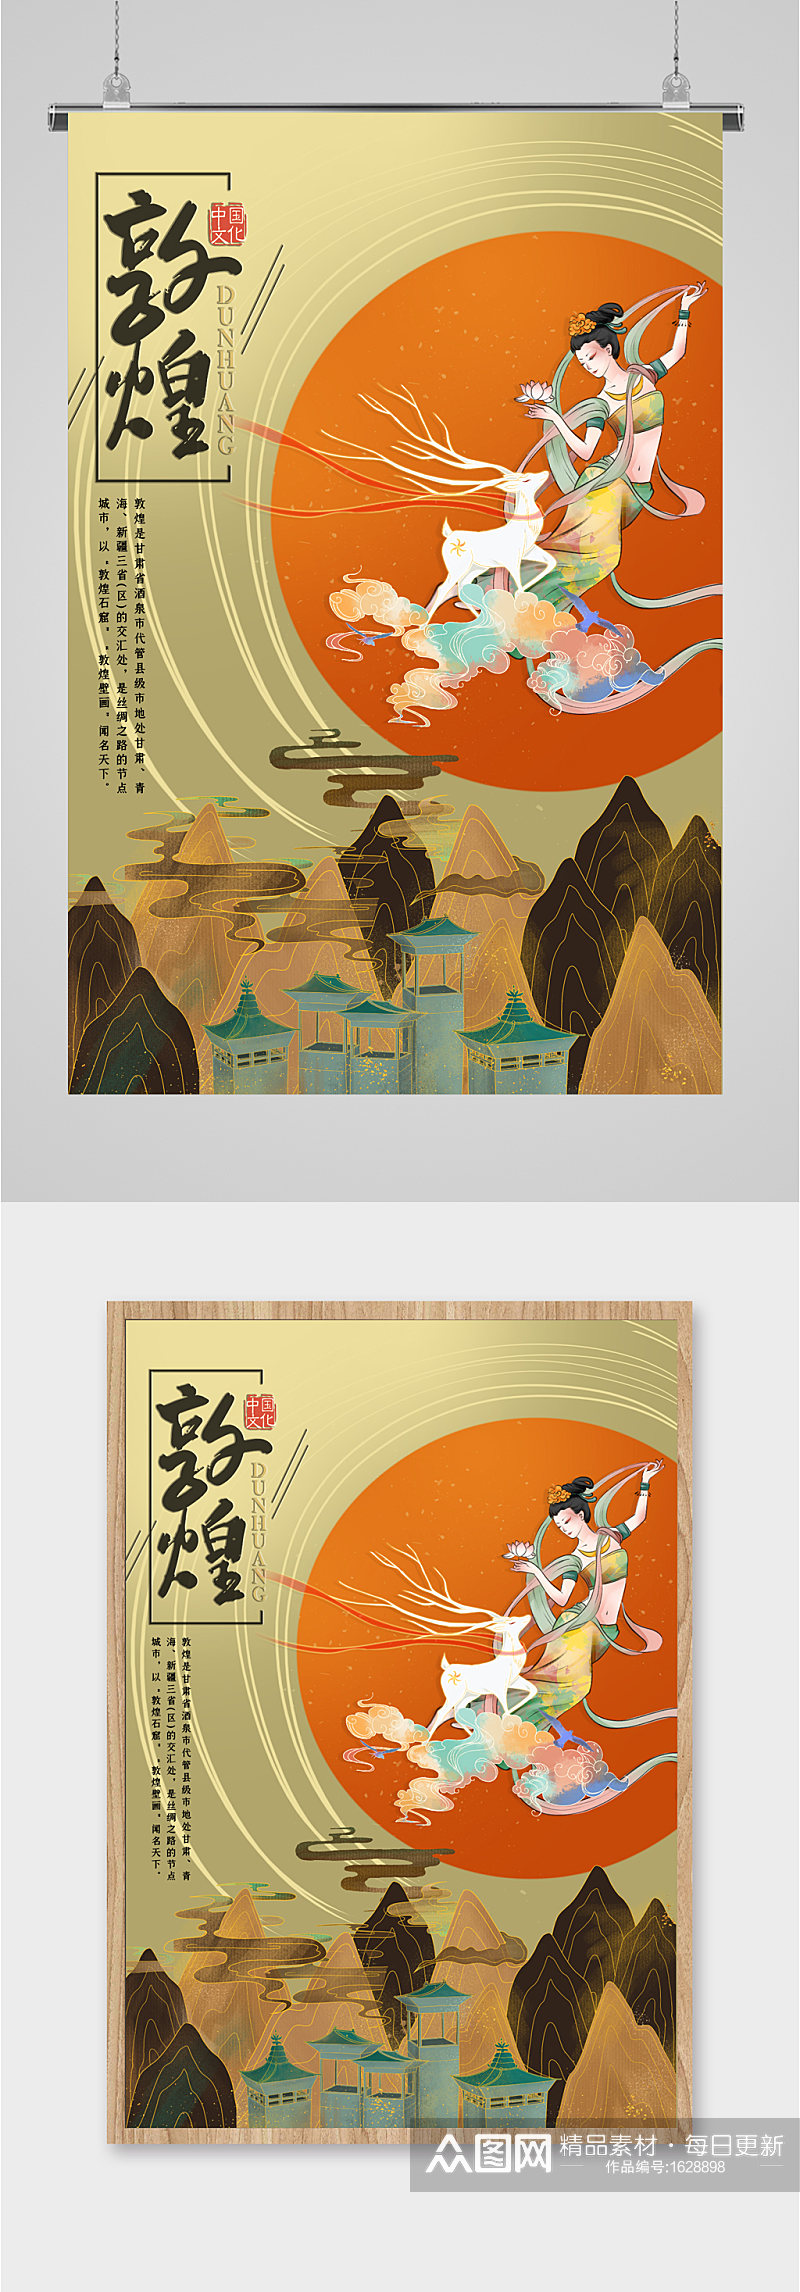 中国文化敦煌艺术海报素材